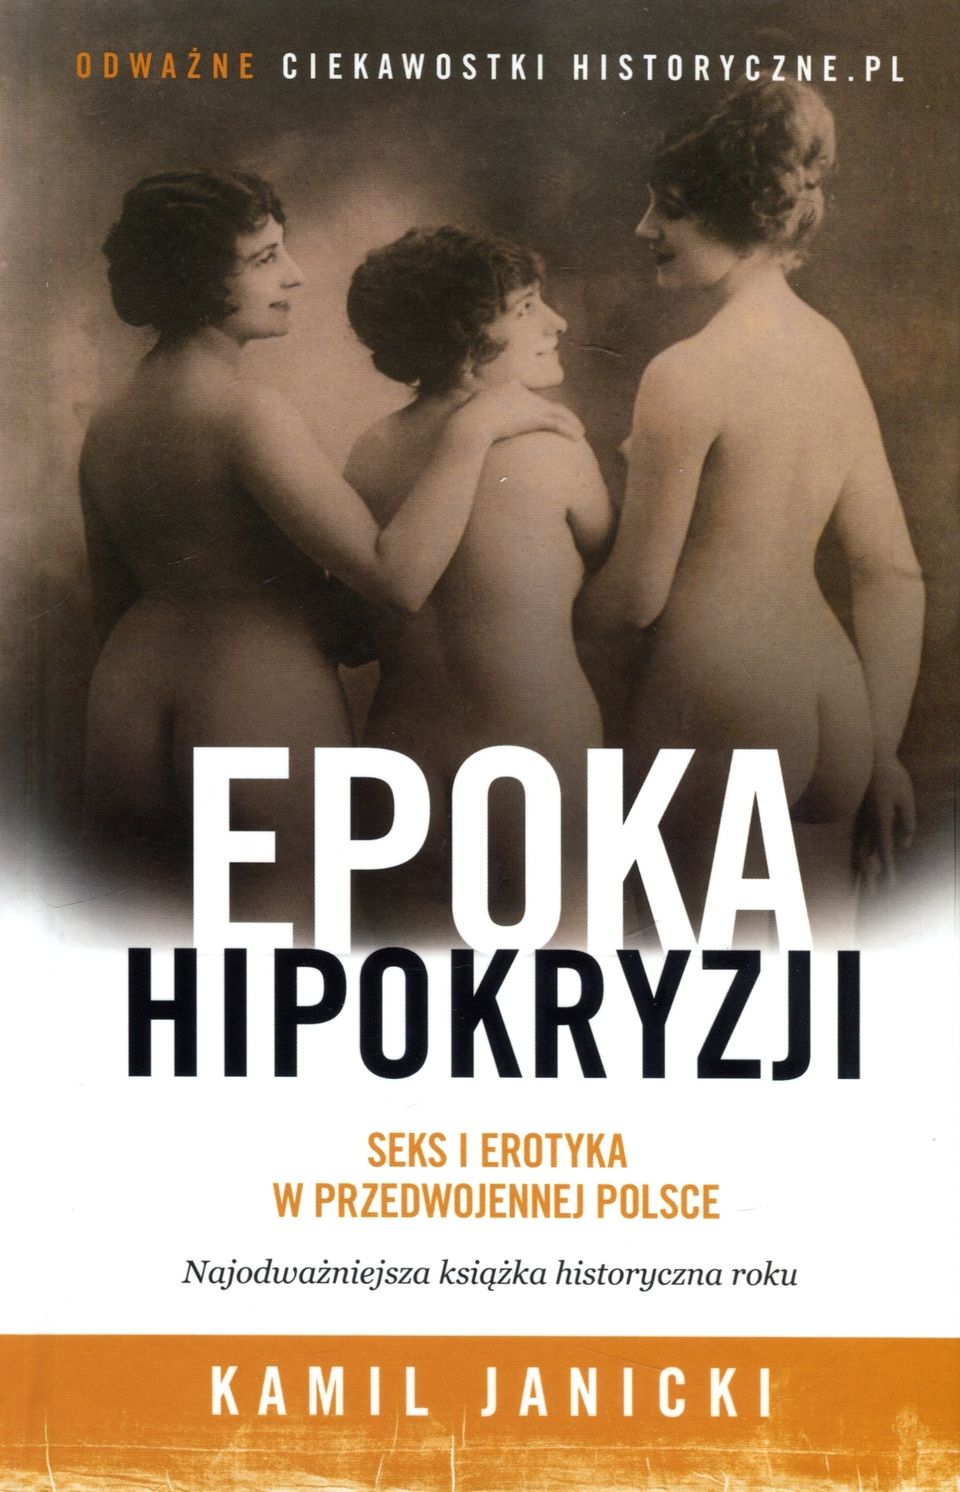 Artykuł powstał w oparciu o książkę Kamila Janickiego pt. „Epoka hipokryzji. Seks i erotyka w przedwojennej Polsce”. Pozycja ta jest pierwszą publikacją książkową pod marką „Ciekawostek historycznych”.